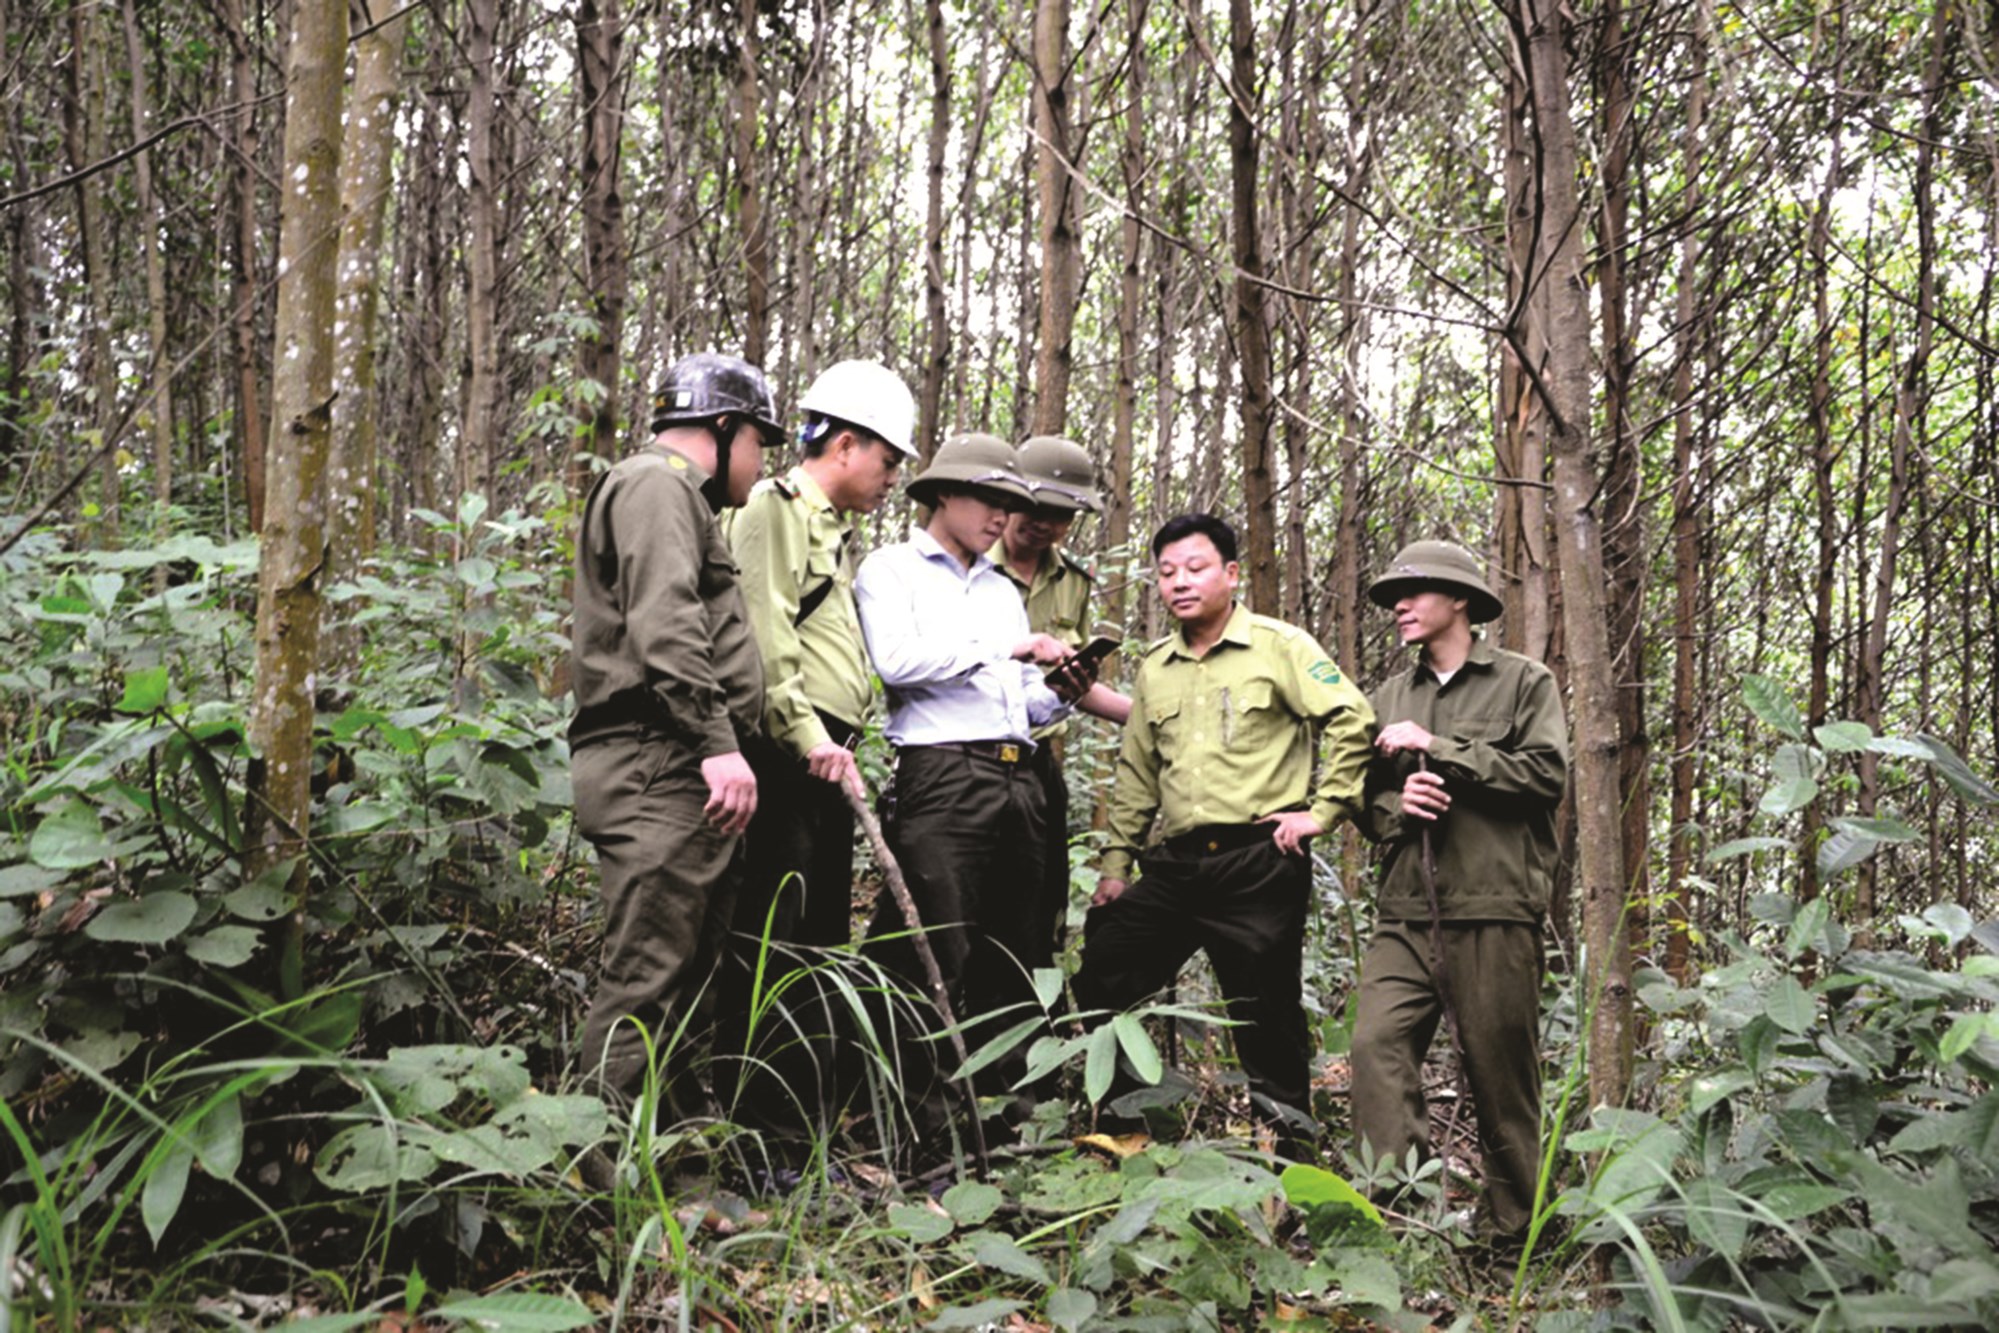 Lực lượng kiểm lâm huyện Bảo Yên sử dụng phần mềm GeoSurvey trên điện thoại thông minh trong quá trình tuần tra bảo vệ rừng